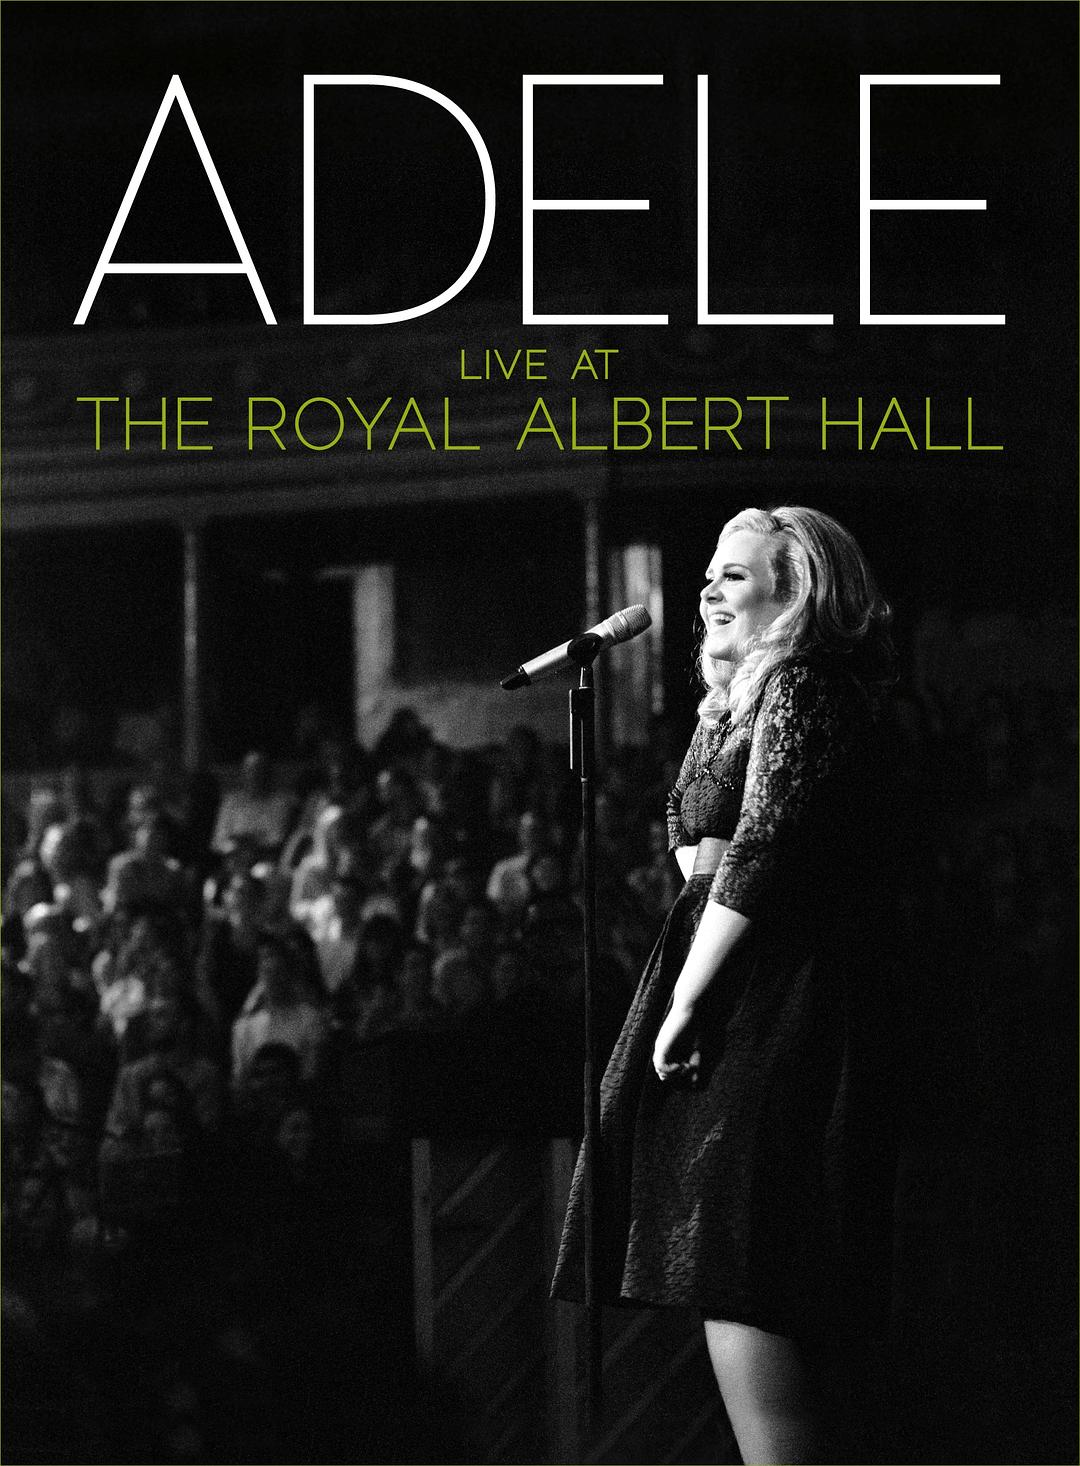 阿黛尔伦敦爱尔伯特音乐厅演唱会[内封中字]Adele.Live.at.the.Royal.Albert.Hall.2011.1080i.BluRay.REMUX.DTS-HD.MA.5.1.H.264-Happy 20.63GB-1.jpg